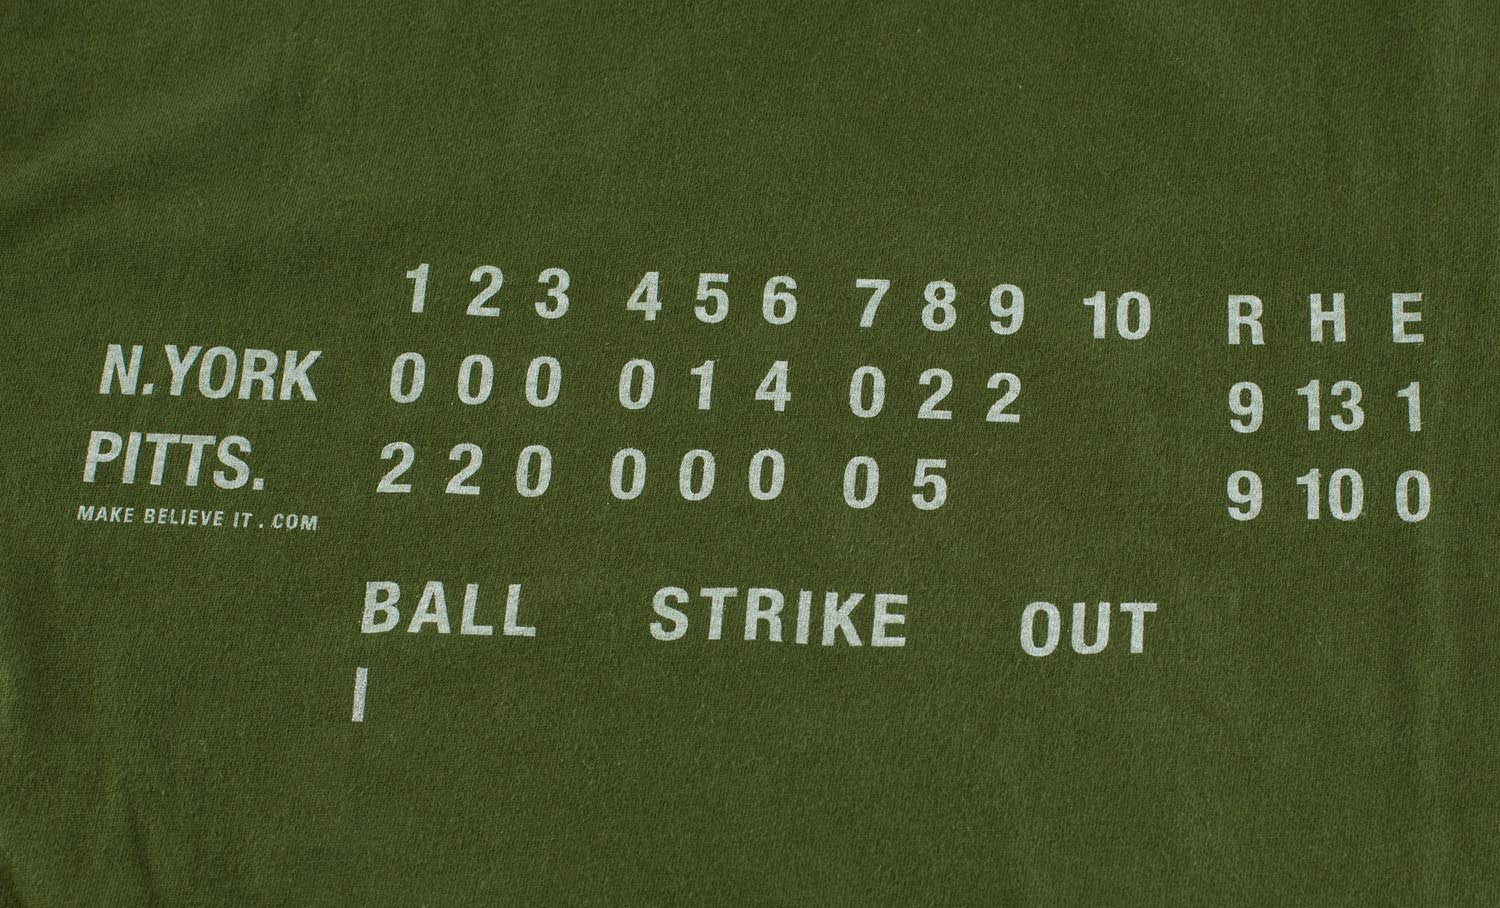 Bill Mazeroski Home Run T Shirt